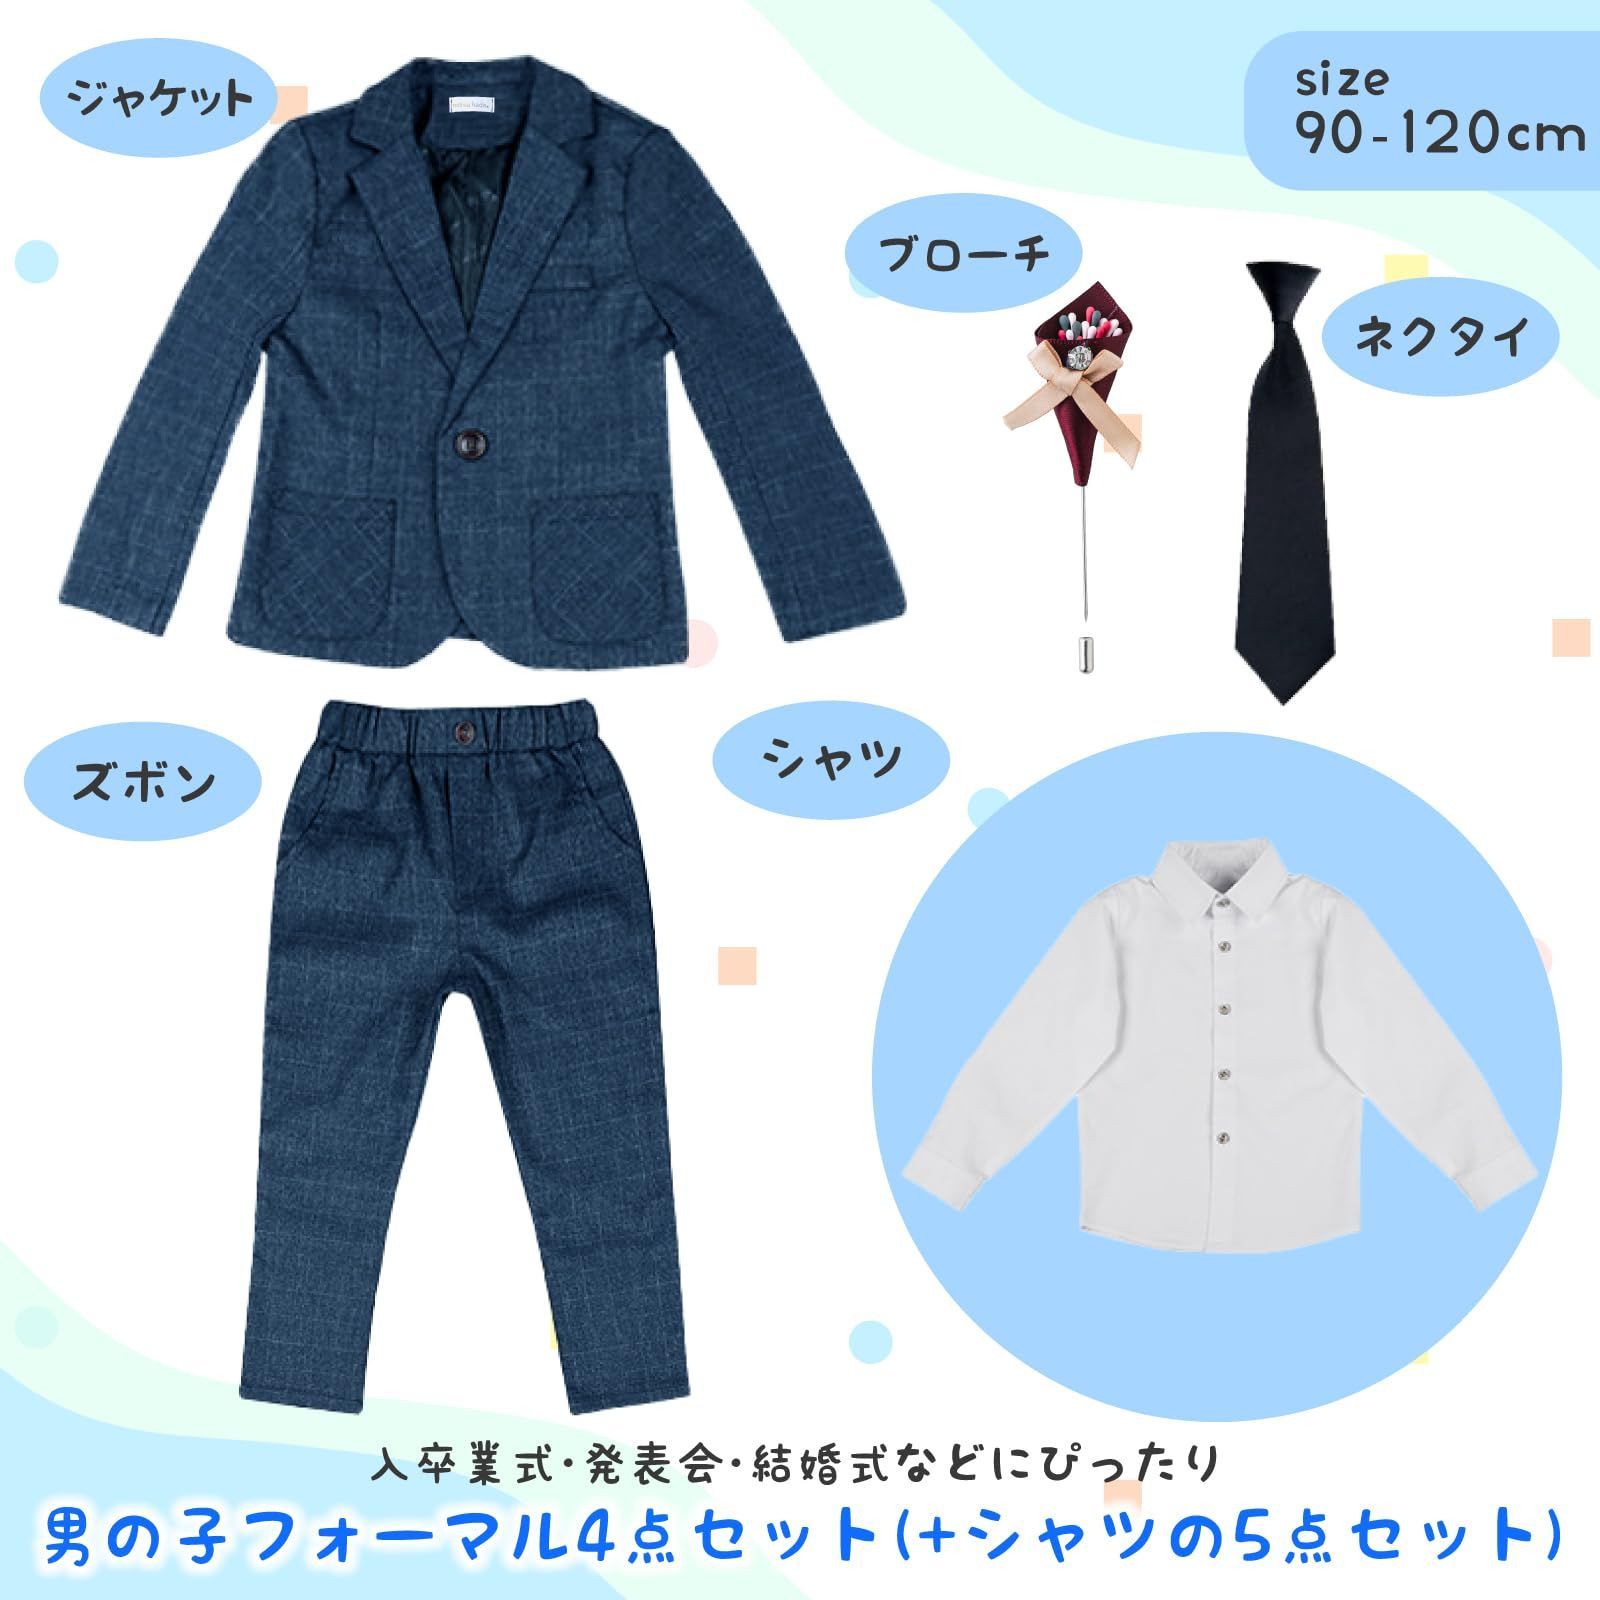 mitsuhada] 入園式 卒園式 入学式 子供服 男の子用 フォーマル 